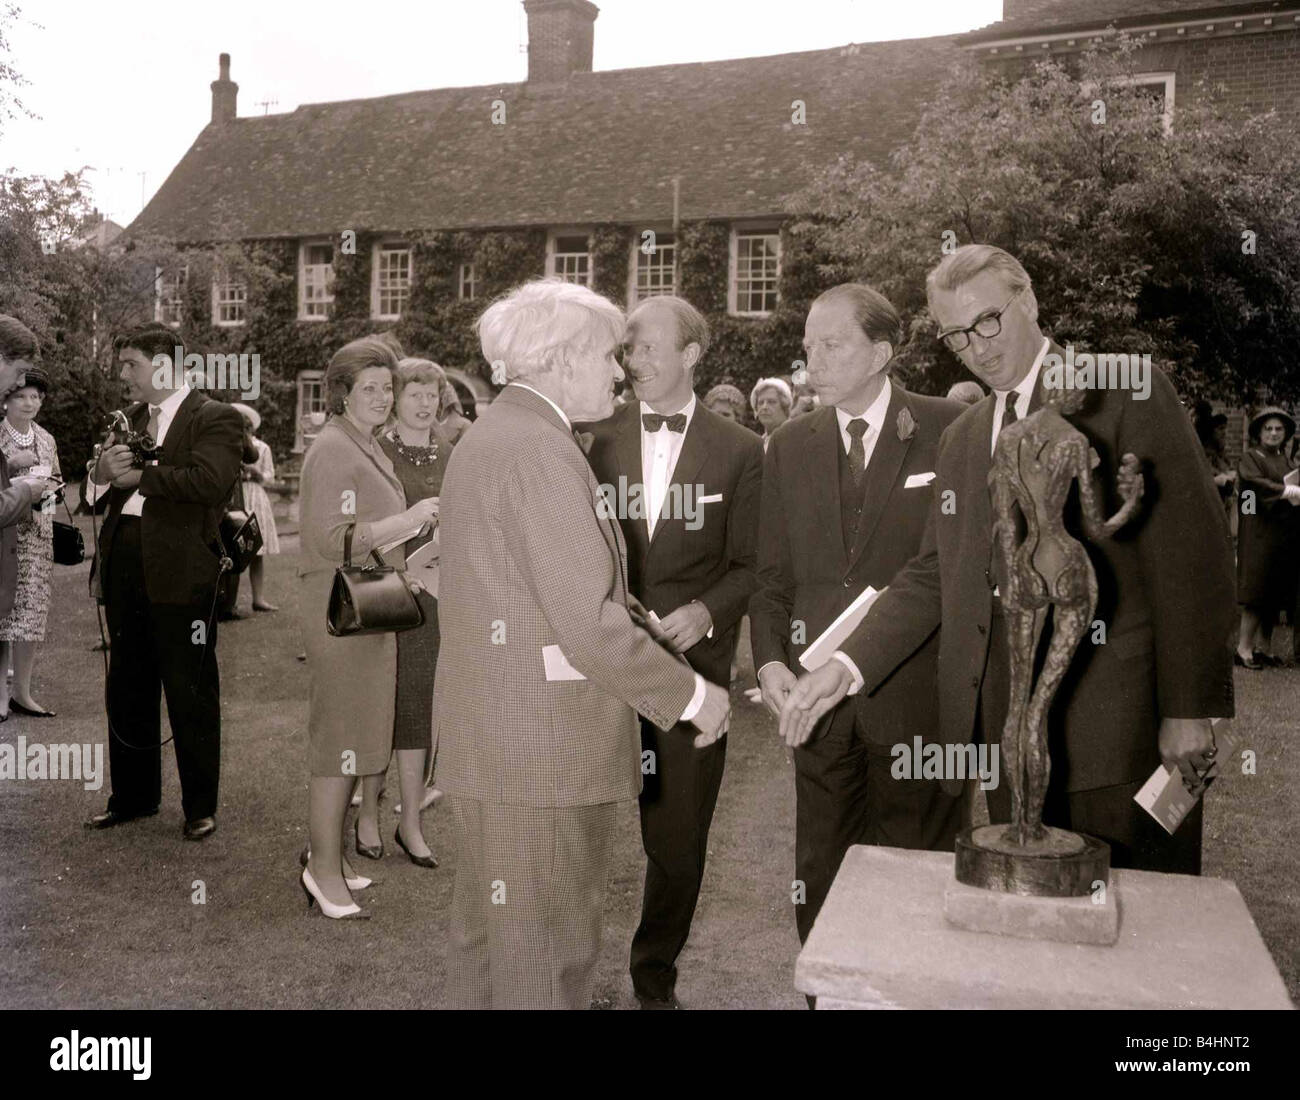 John Paul Getty Oil Billionaire assister à une exposition de l'homme sans nom et Cary Grant acteur Juillet 1962 Mirrorpix com Banque D'Images